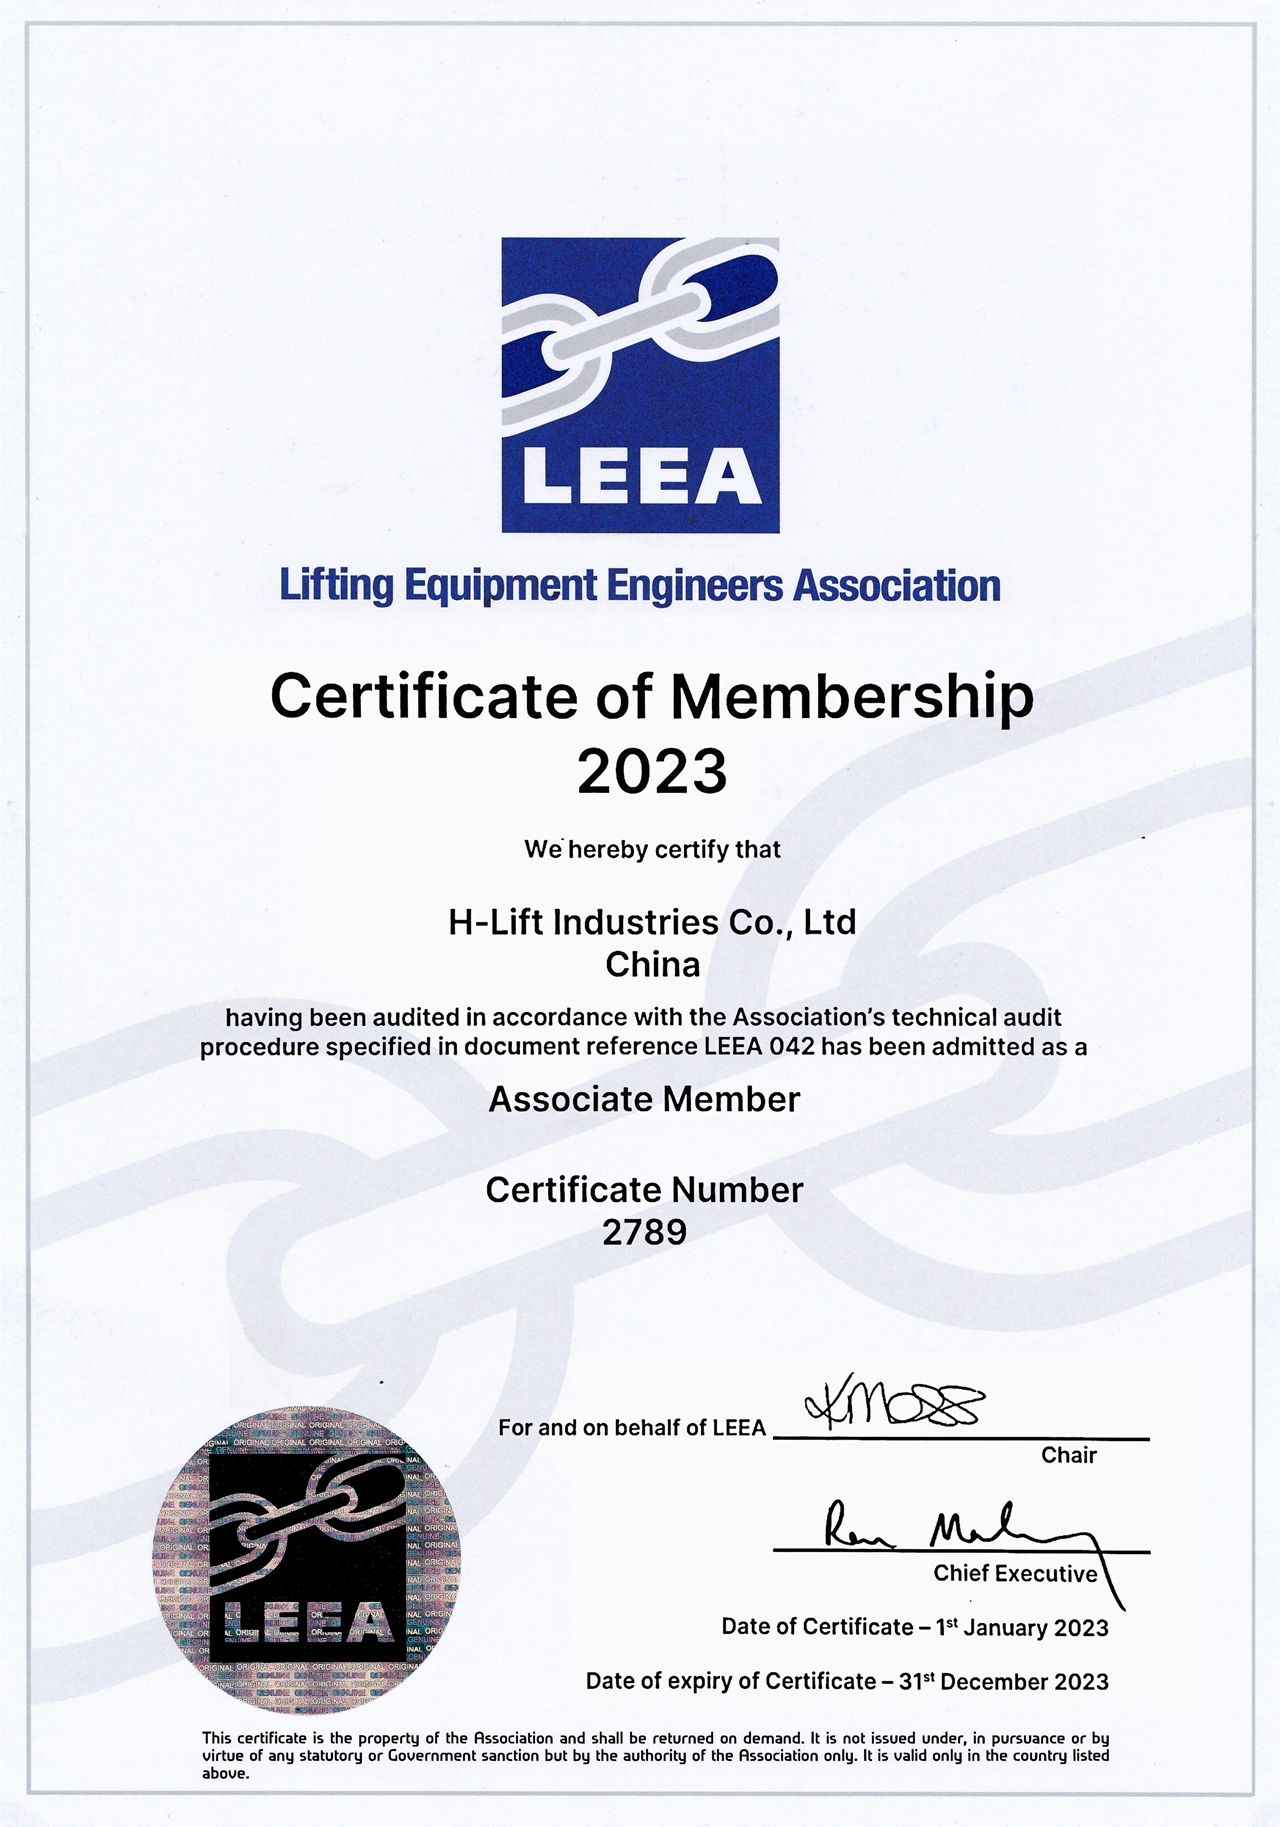 Lifting Equipment Engineers Association(LEEA), H-Lift